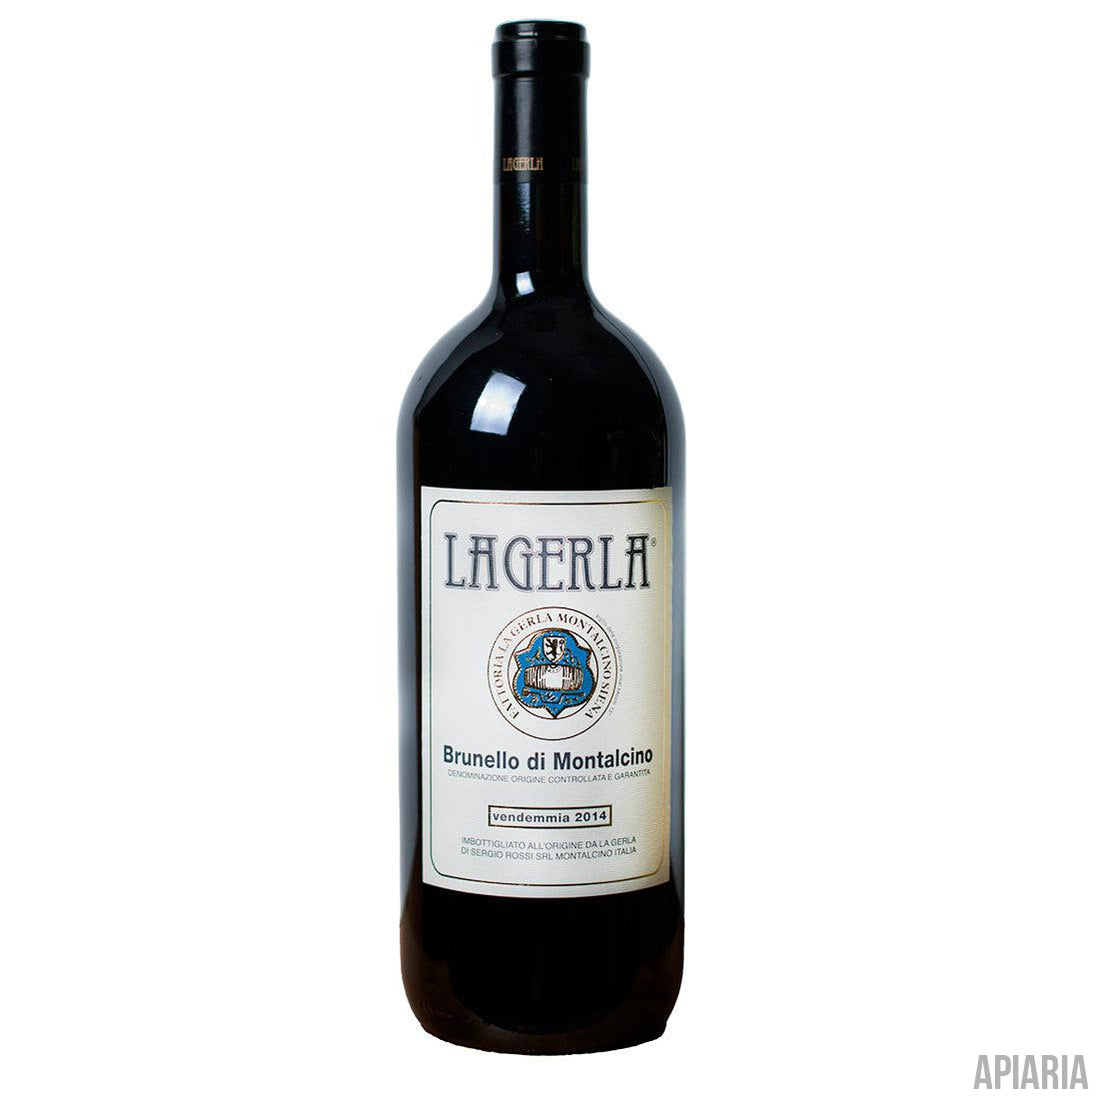 La Gerla Brunello di Montalcino 2014 Magnum 1.5L-Wine-Apiaria